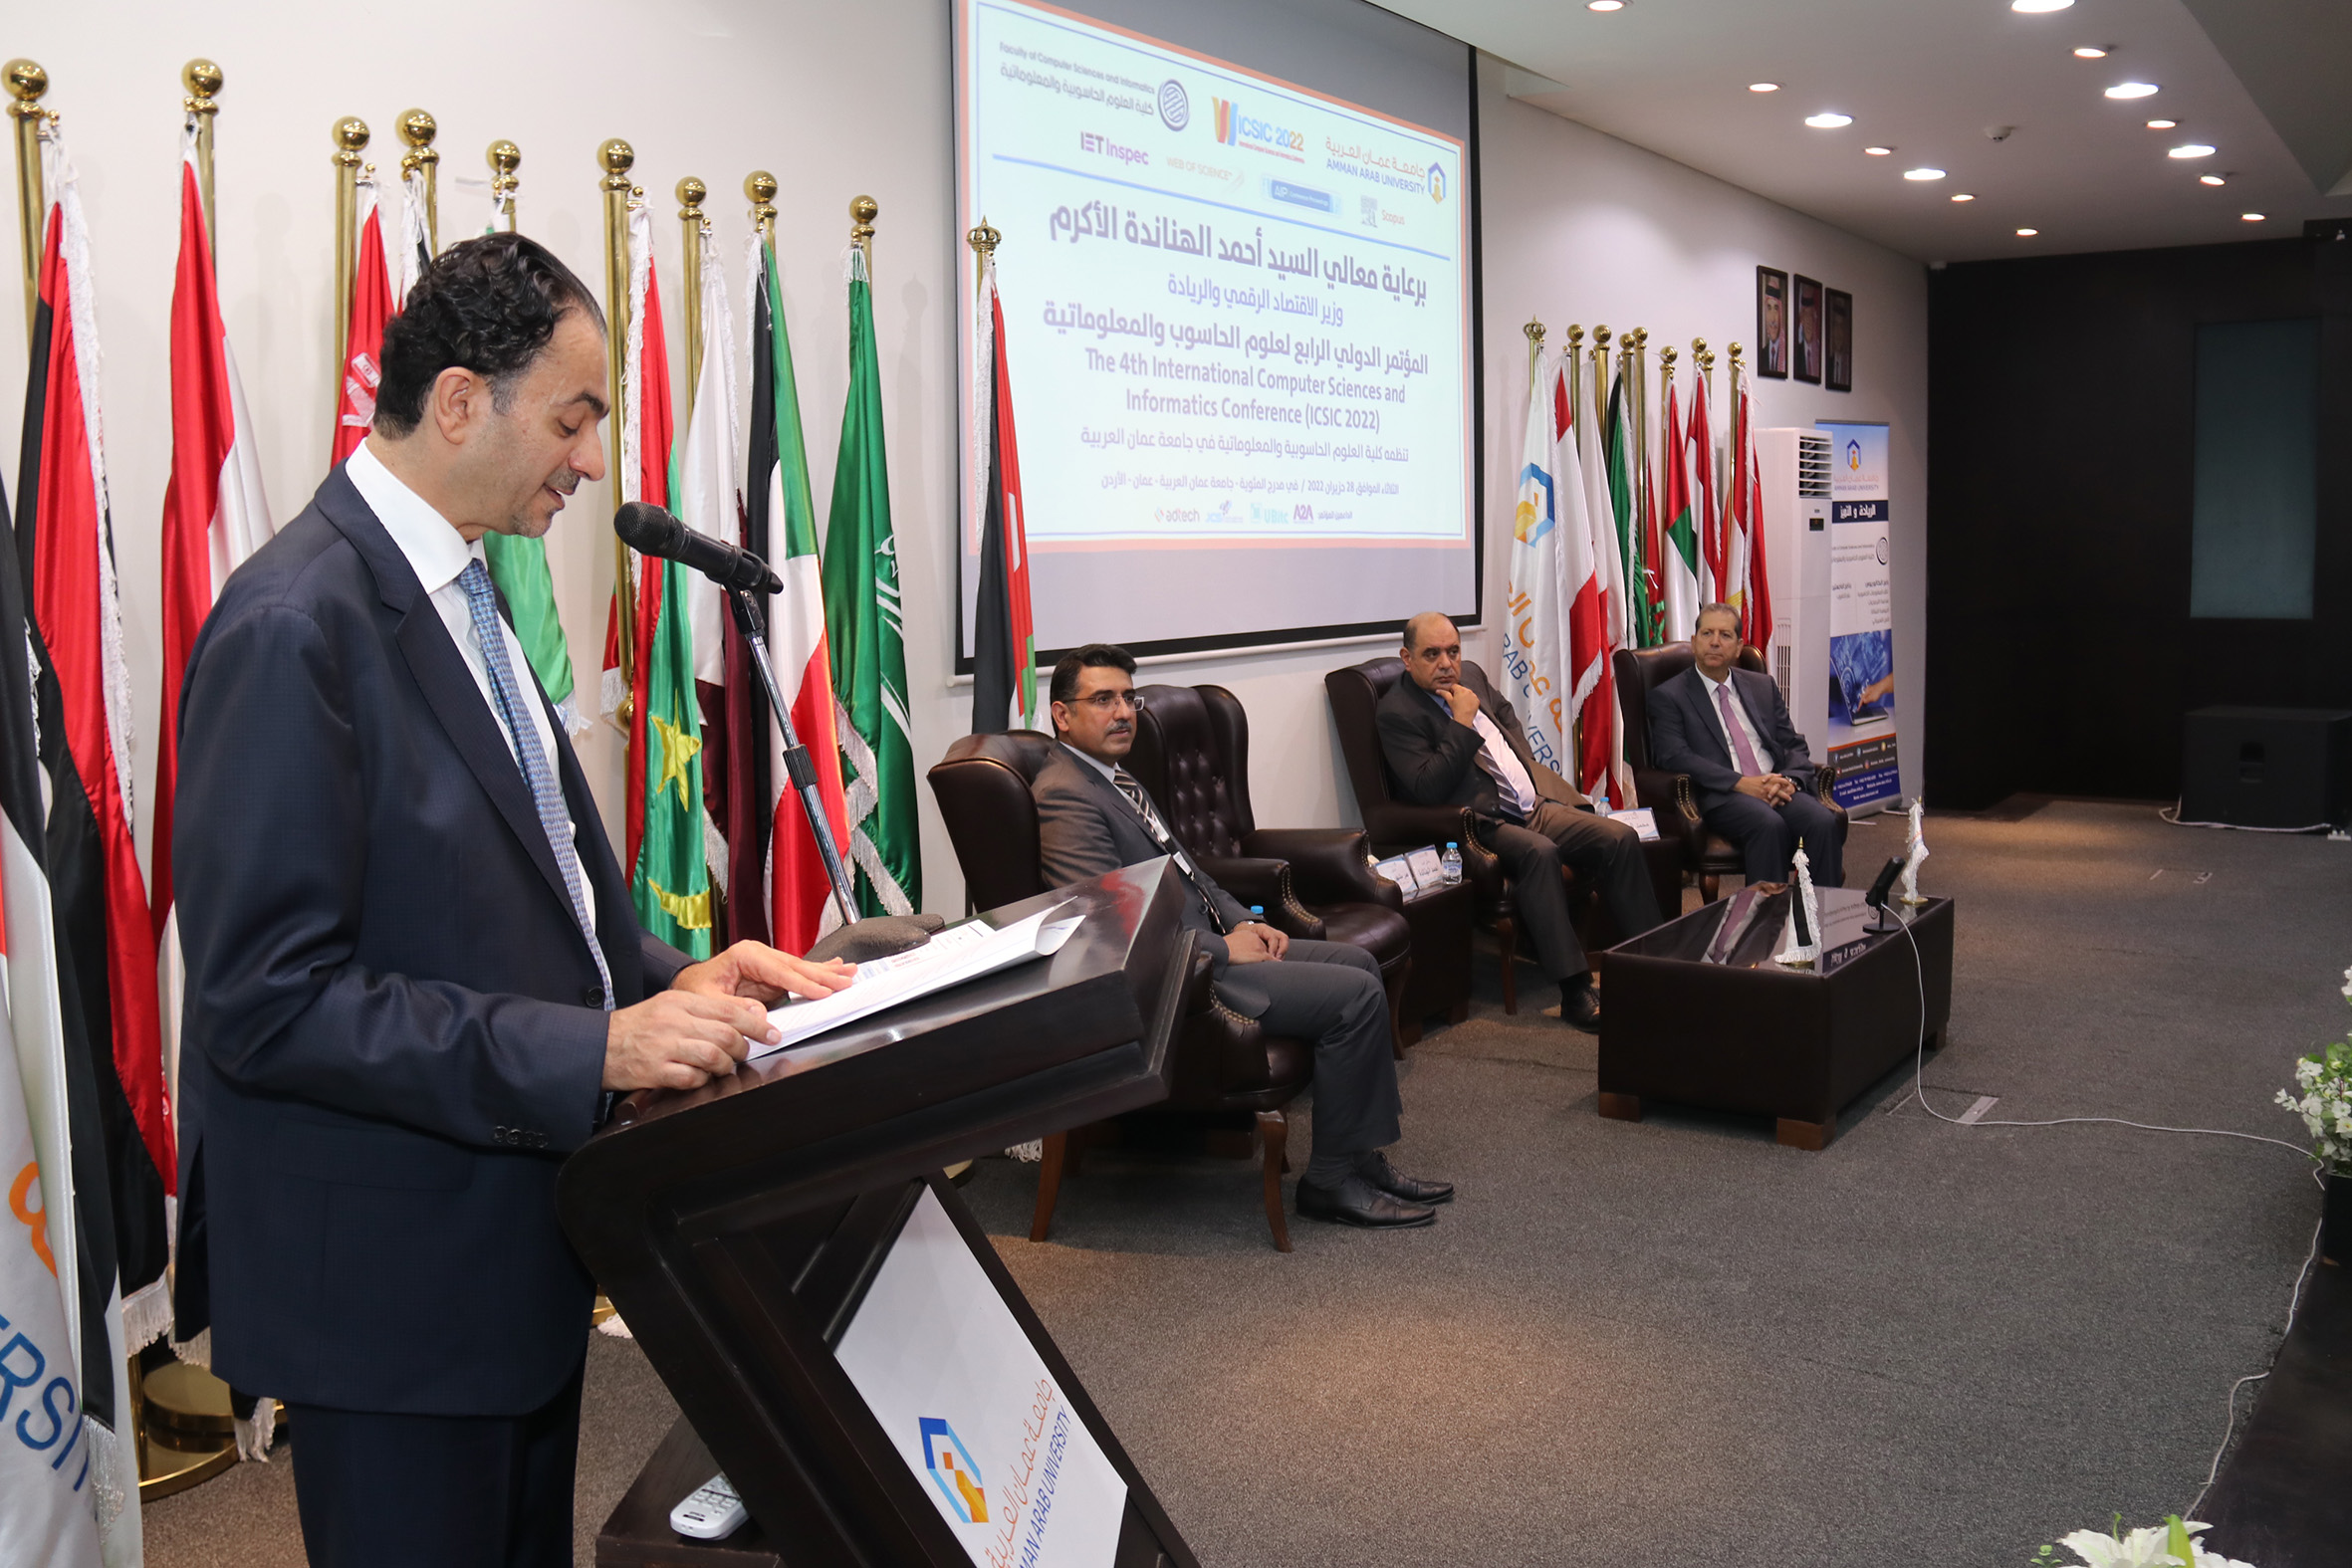 الهناندة يرعى افتتاح فعاليات المؤتمر الدولي الرابع في العلوم الحاسوبية والمعلوماتية في "عمان العربية"11